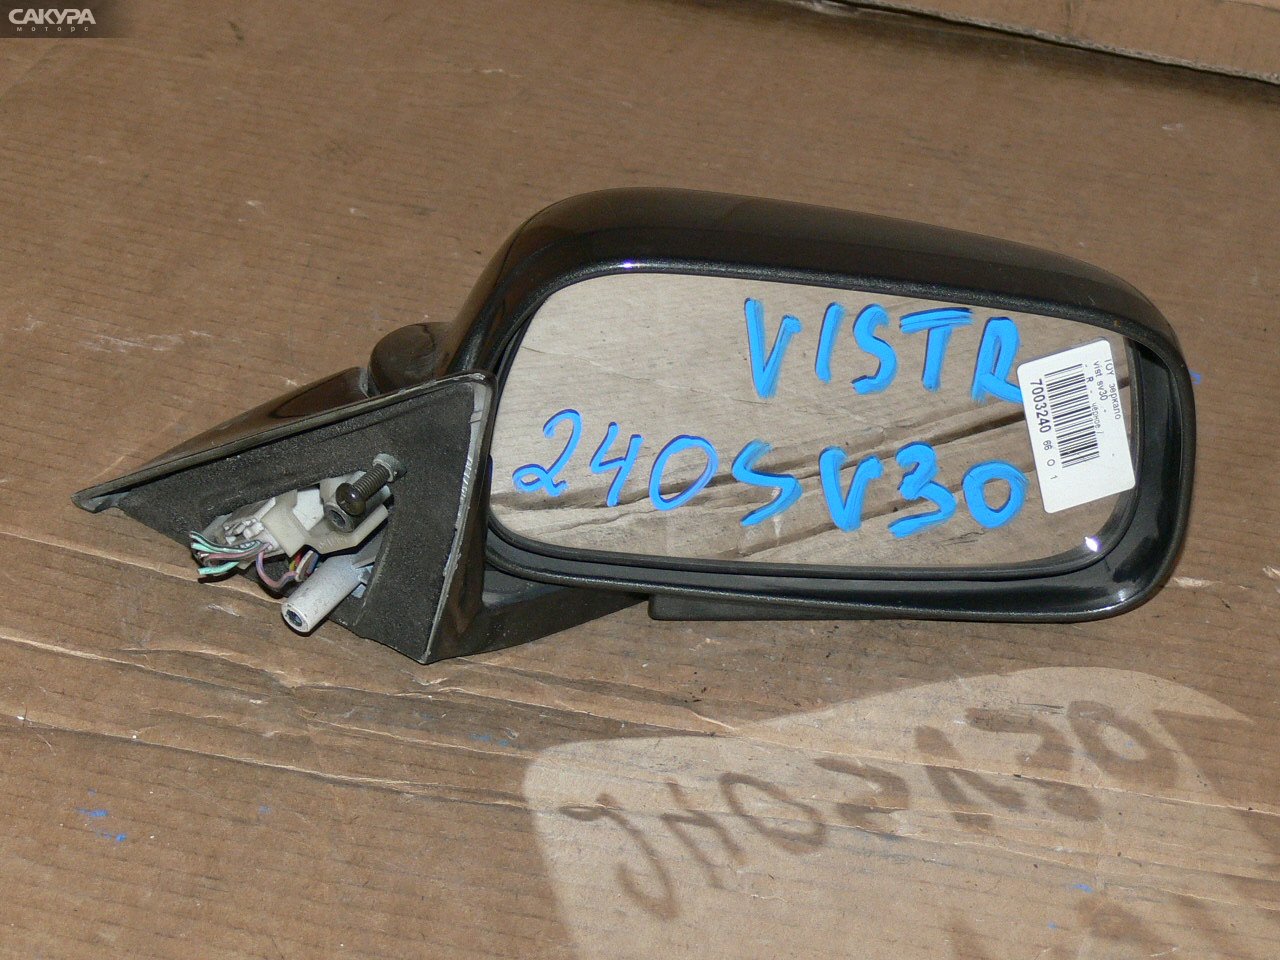 Зеркало боковое правое Toyota Vista SV30: купить в Сакура Иркутск.